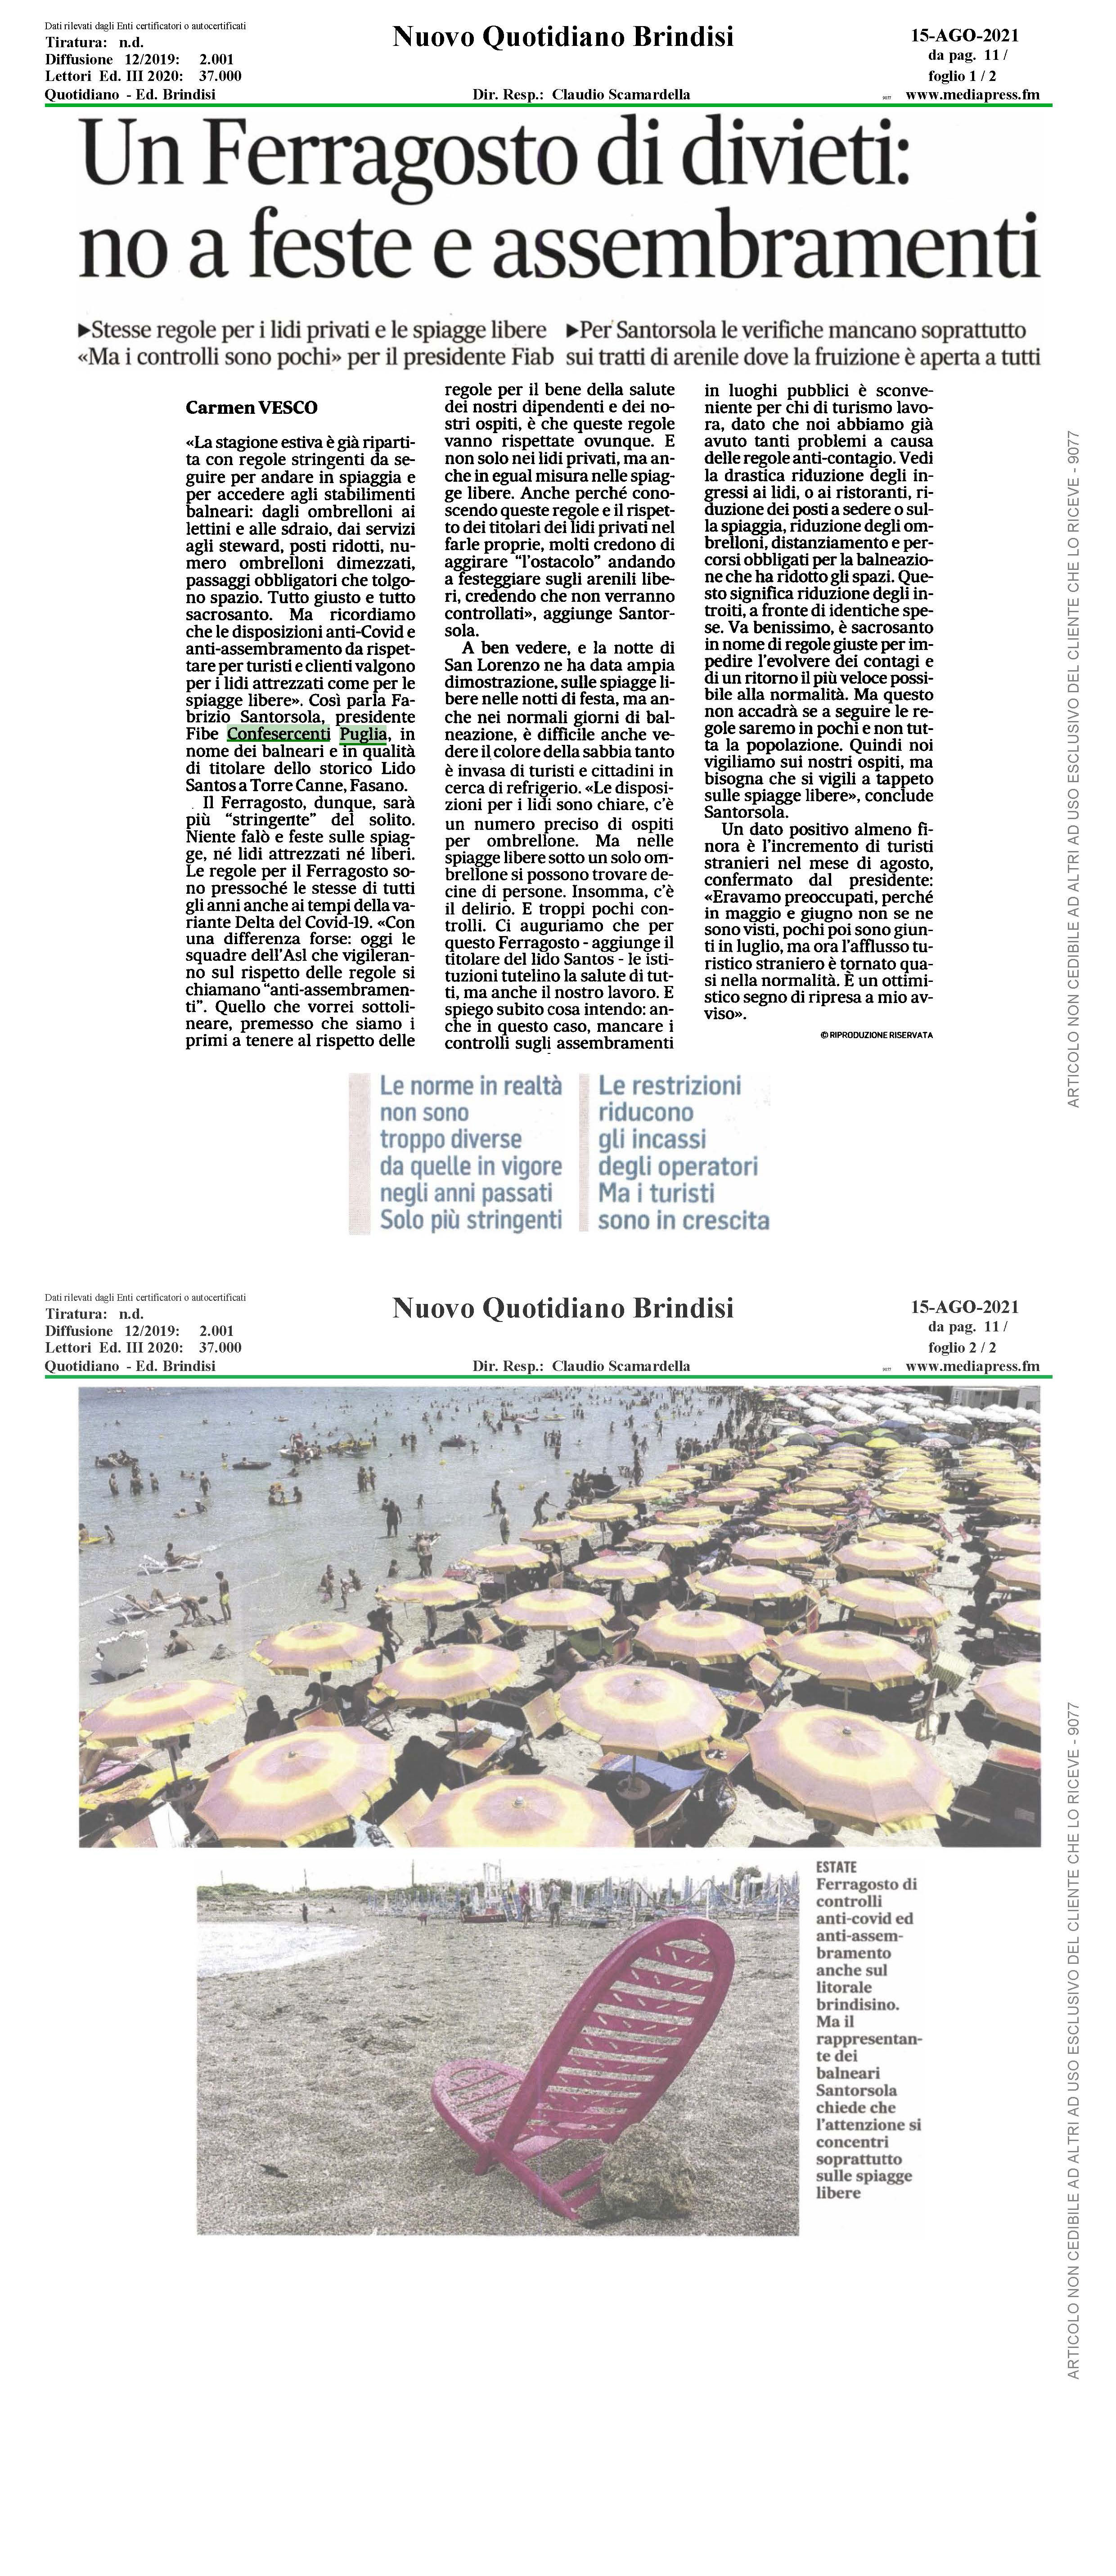 Al momento stai visualizzando Nuovo quotidiano di Brindisi – Un Ferragosto di divieti: no a feste e assembramenti